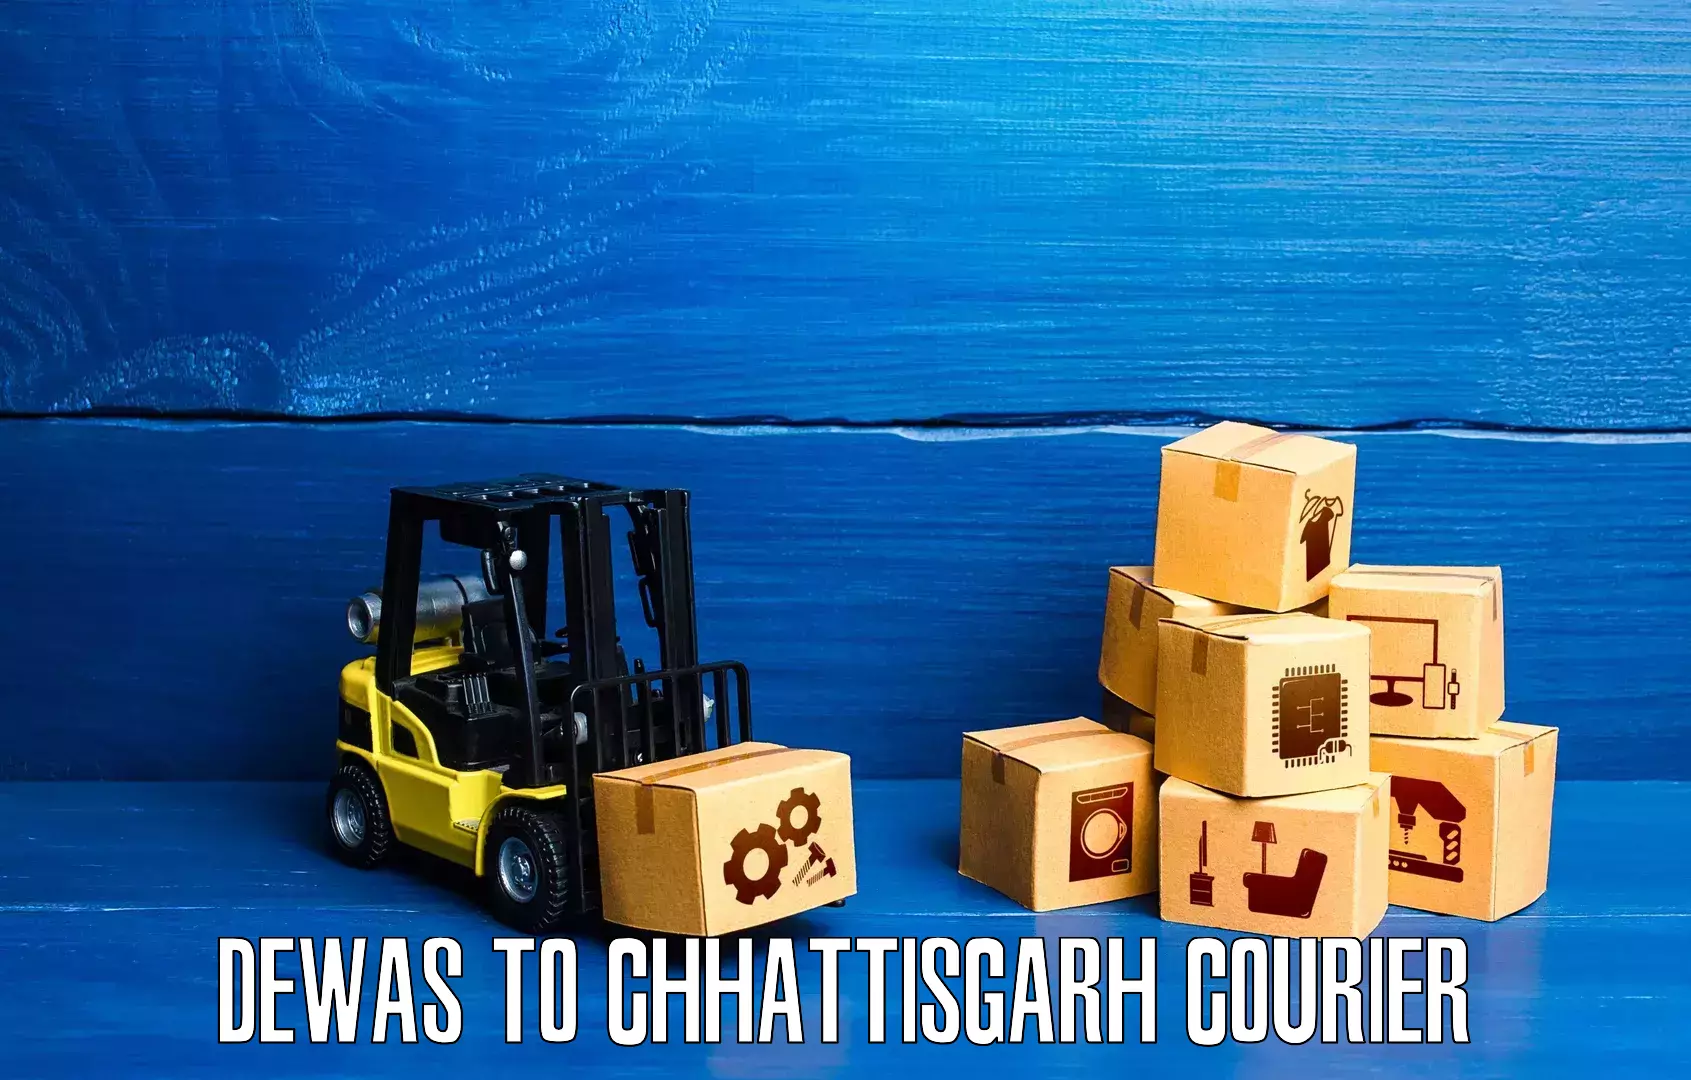 Personal courier services Dewas to Bijapur Chhattisgarh